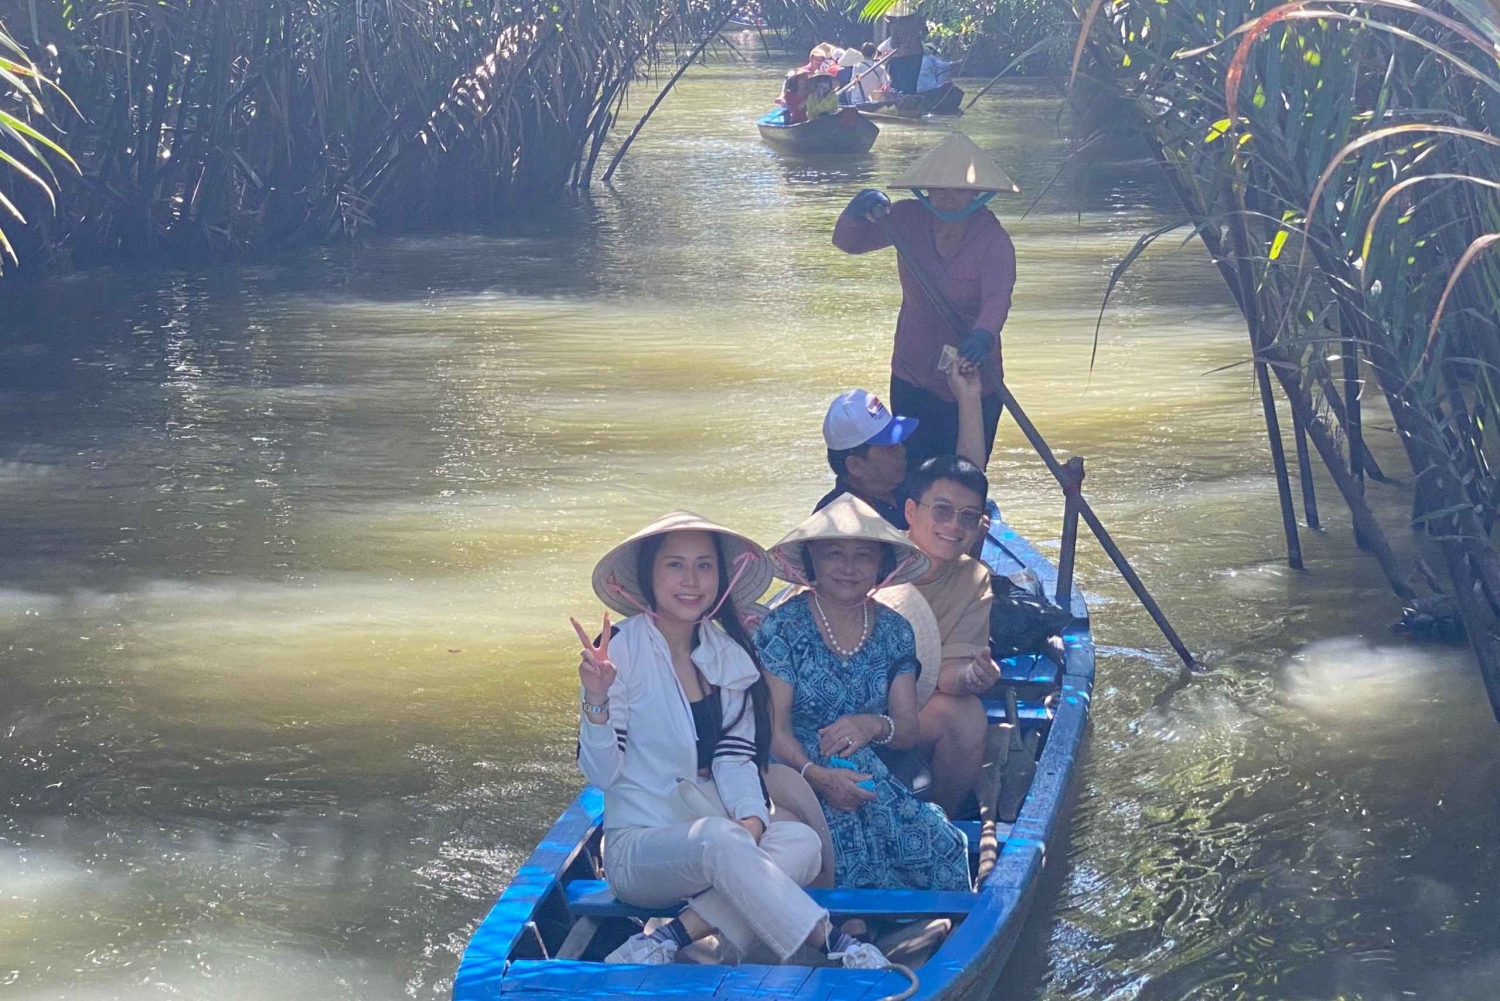 Fra Ho Chi Minh: Mekong-deltaet 3 dager (Chau Doc) på hotellet